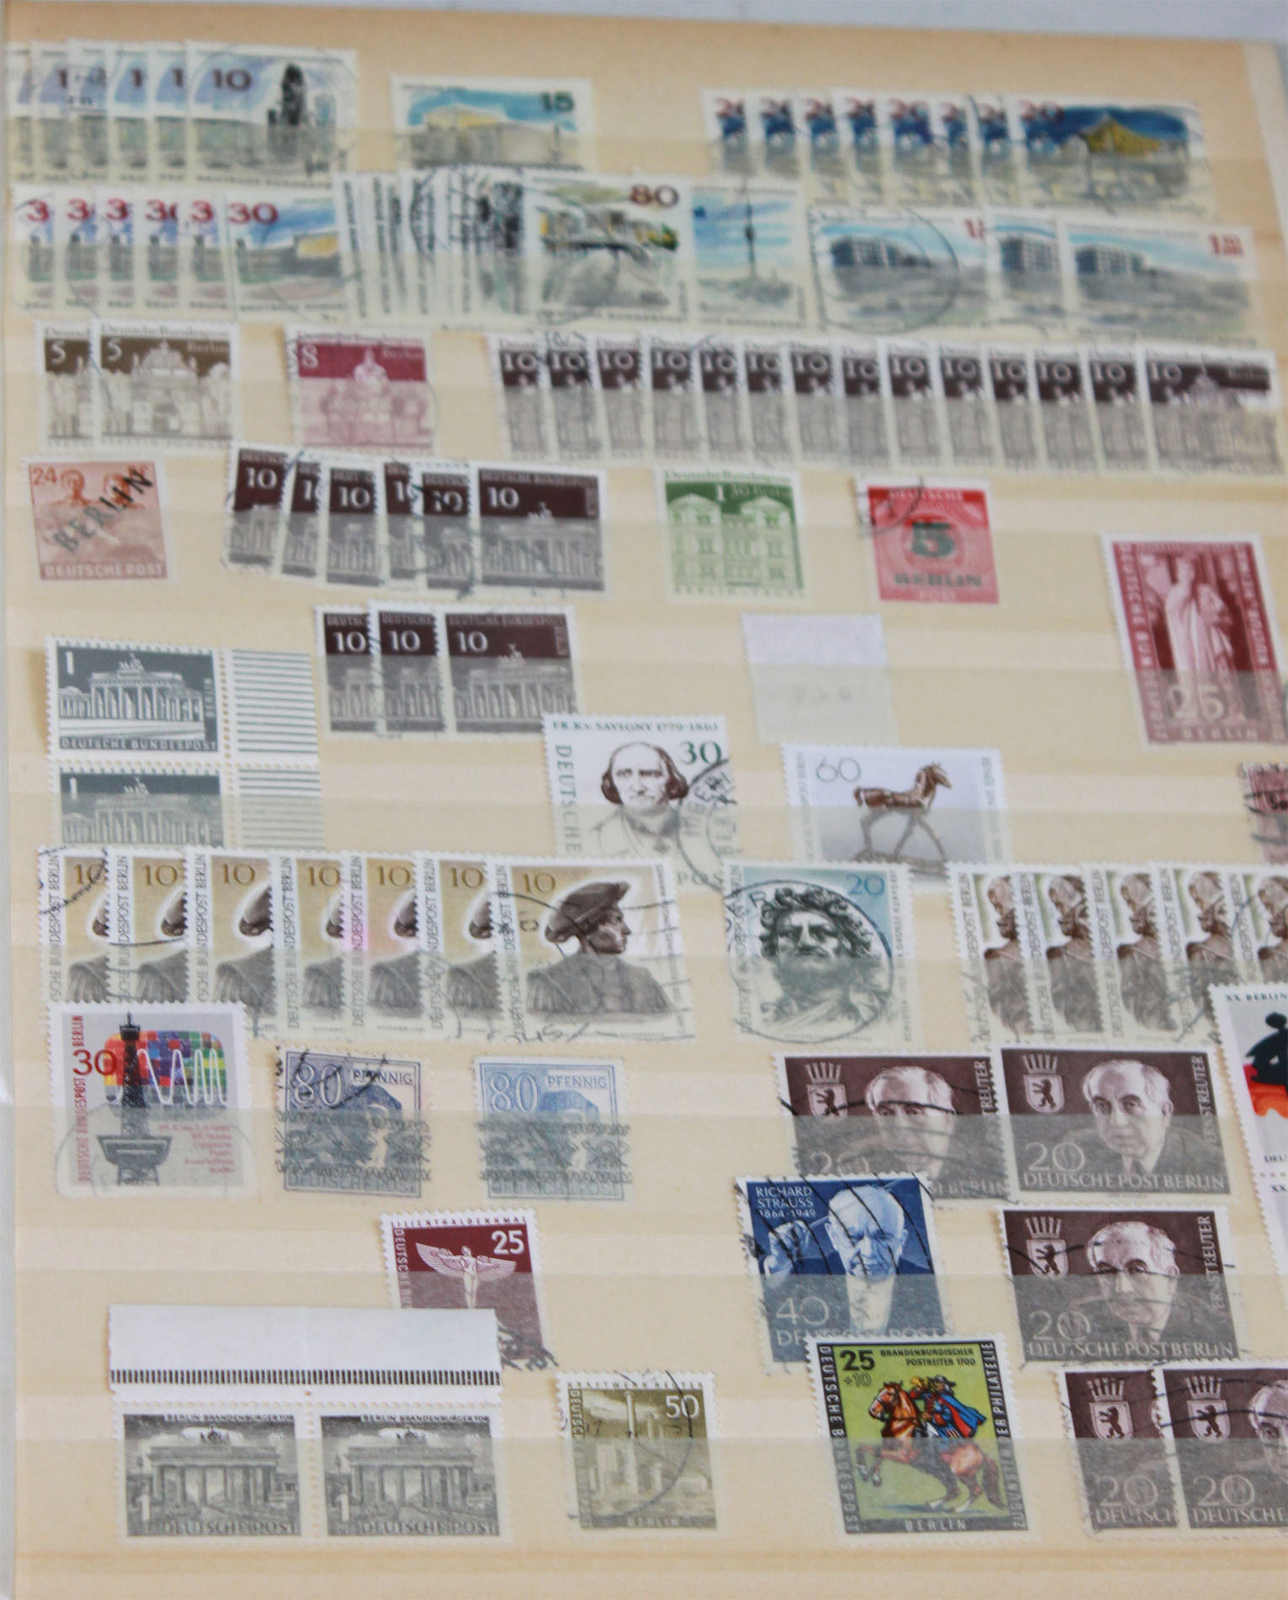 kleines Lot Briefmarkenalben, "BRD", insgesamt 6 StückMindestpreis: 15 EUR - Image 3 of 3